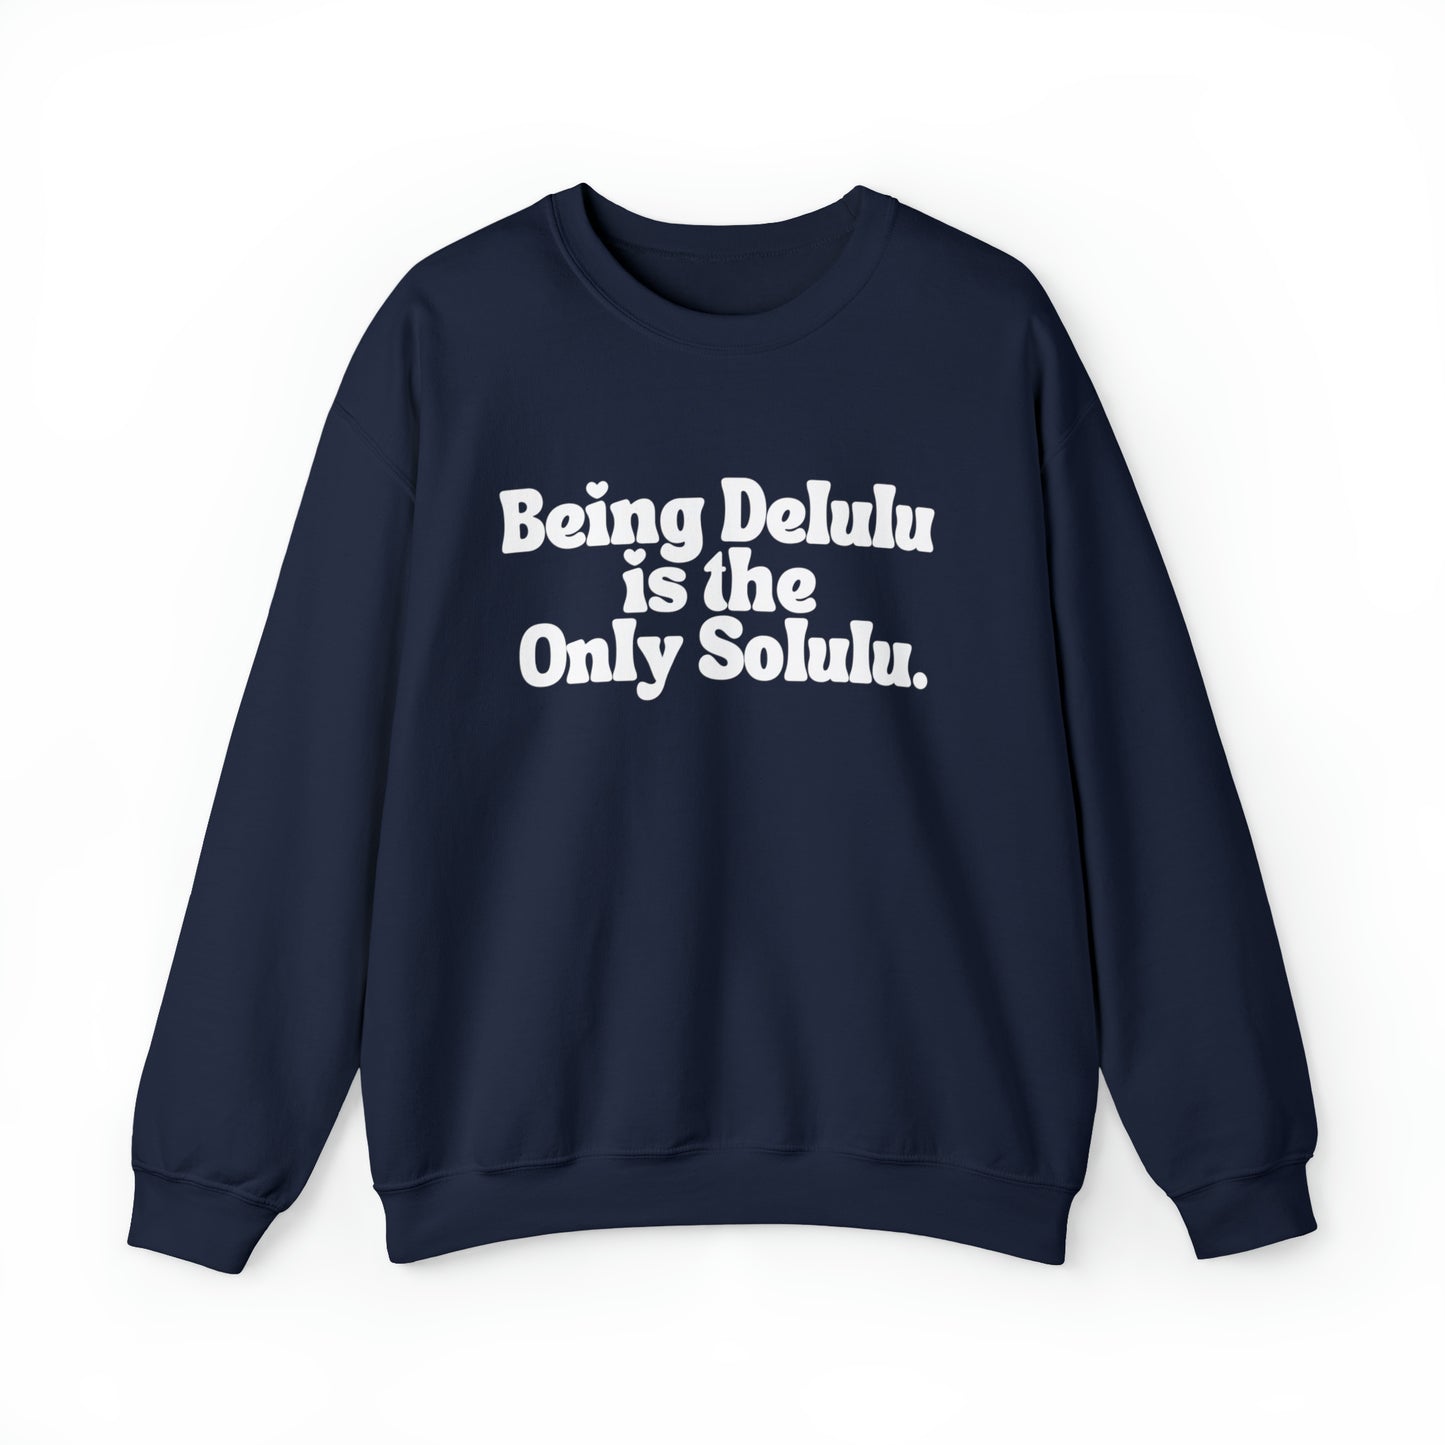 Delulu Solulu Sweatshirt